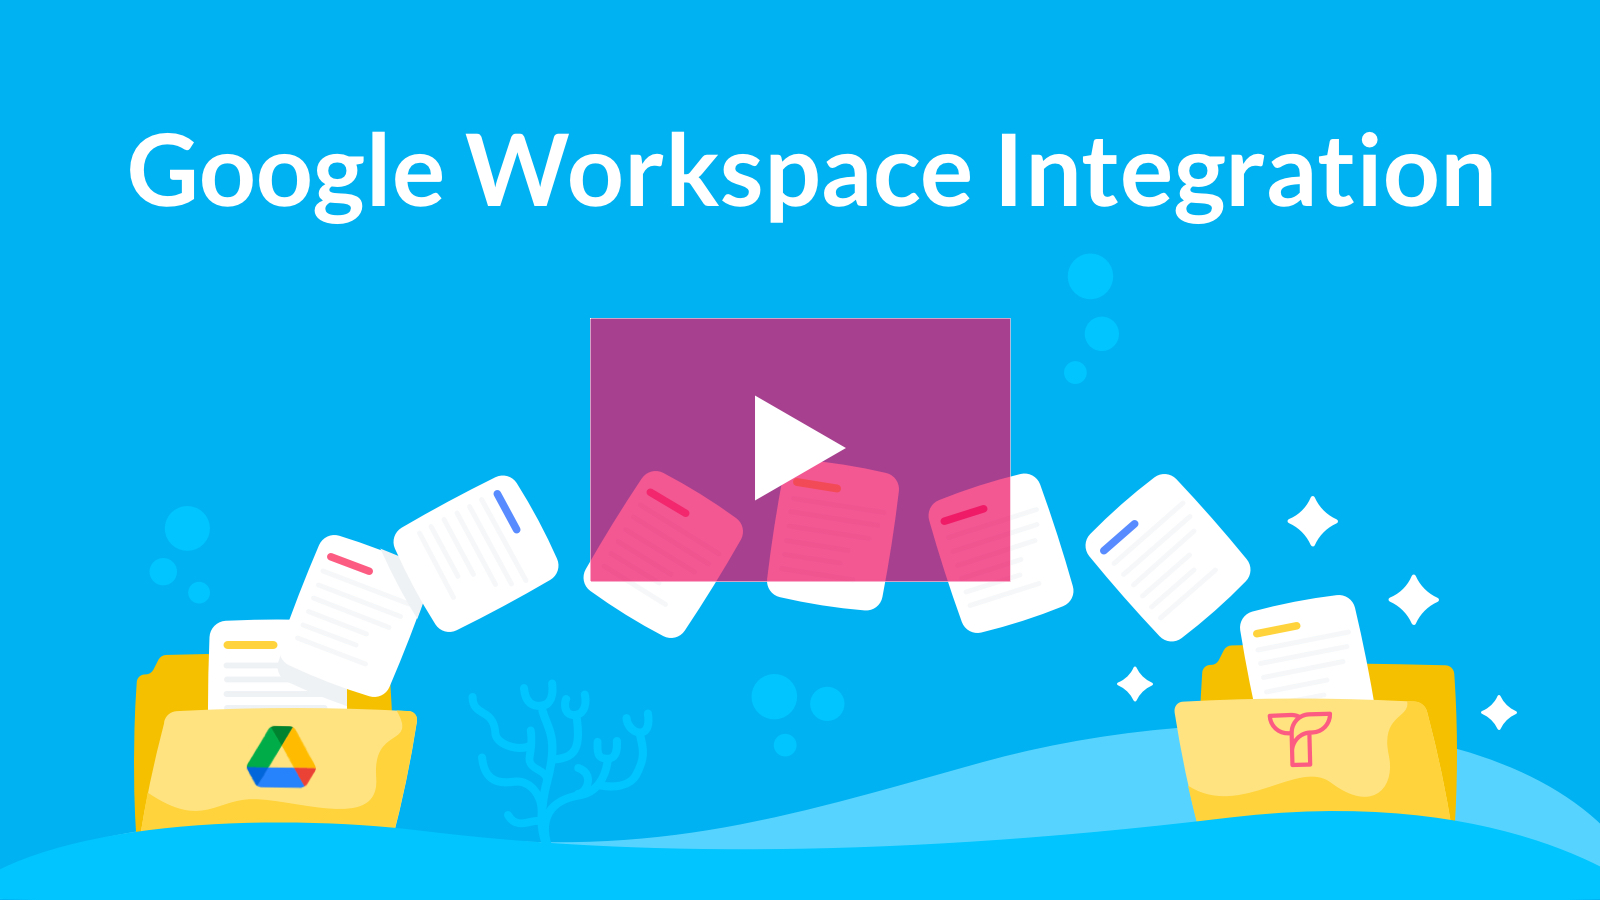 Google Workspace Integration